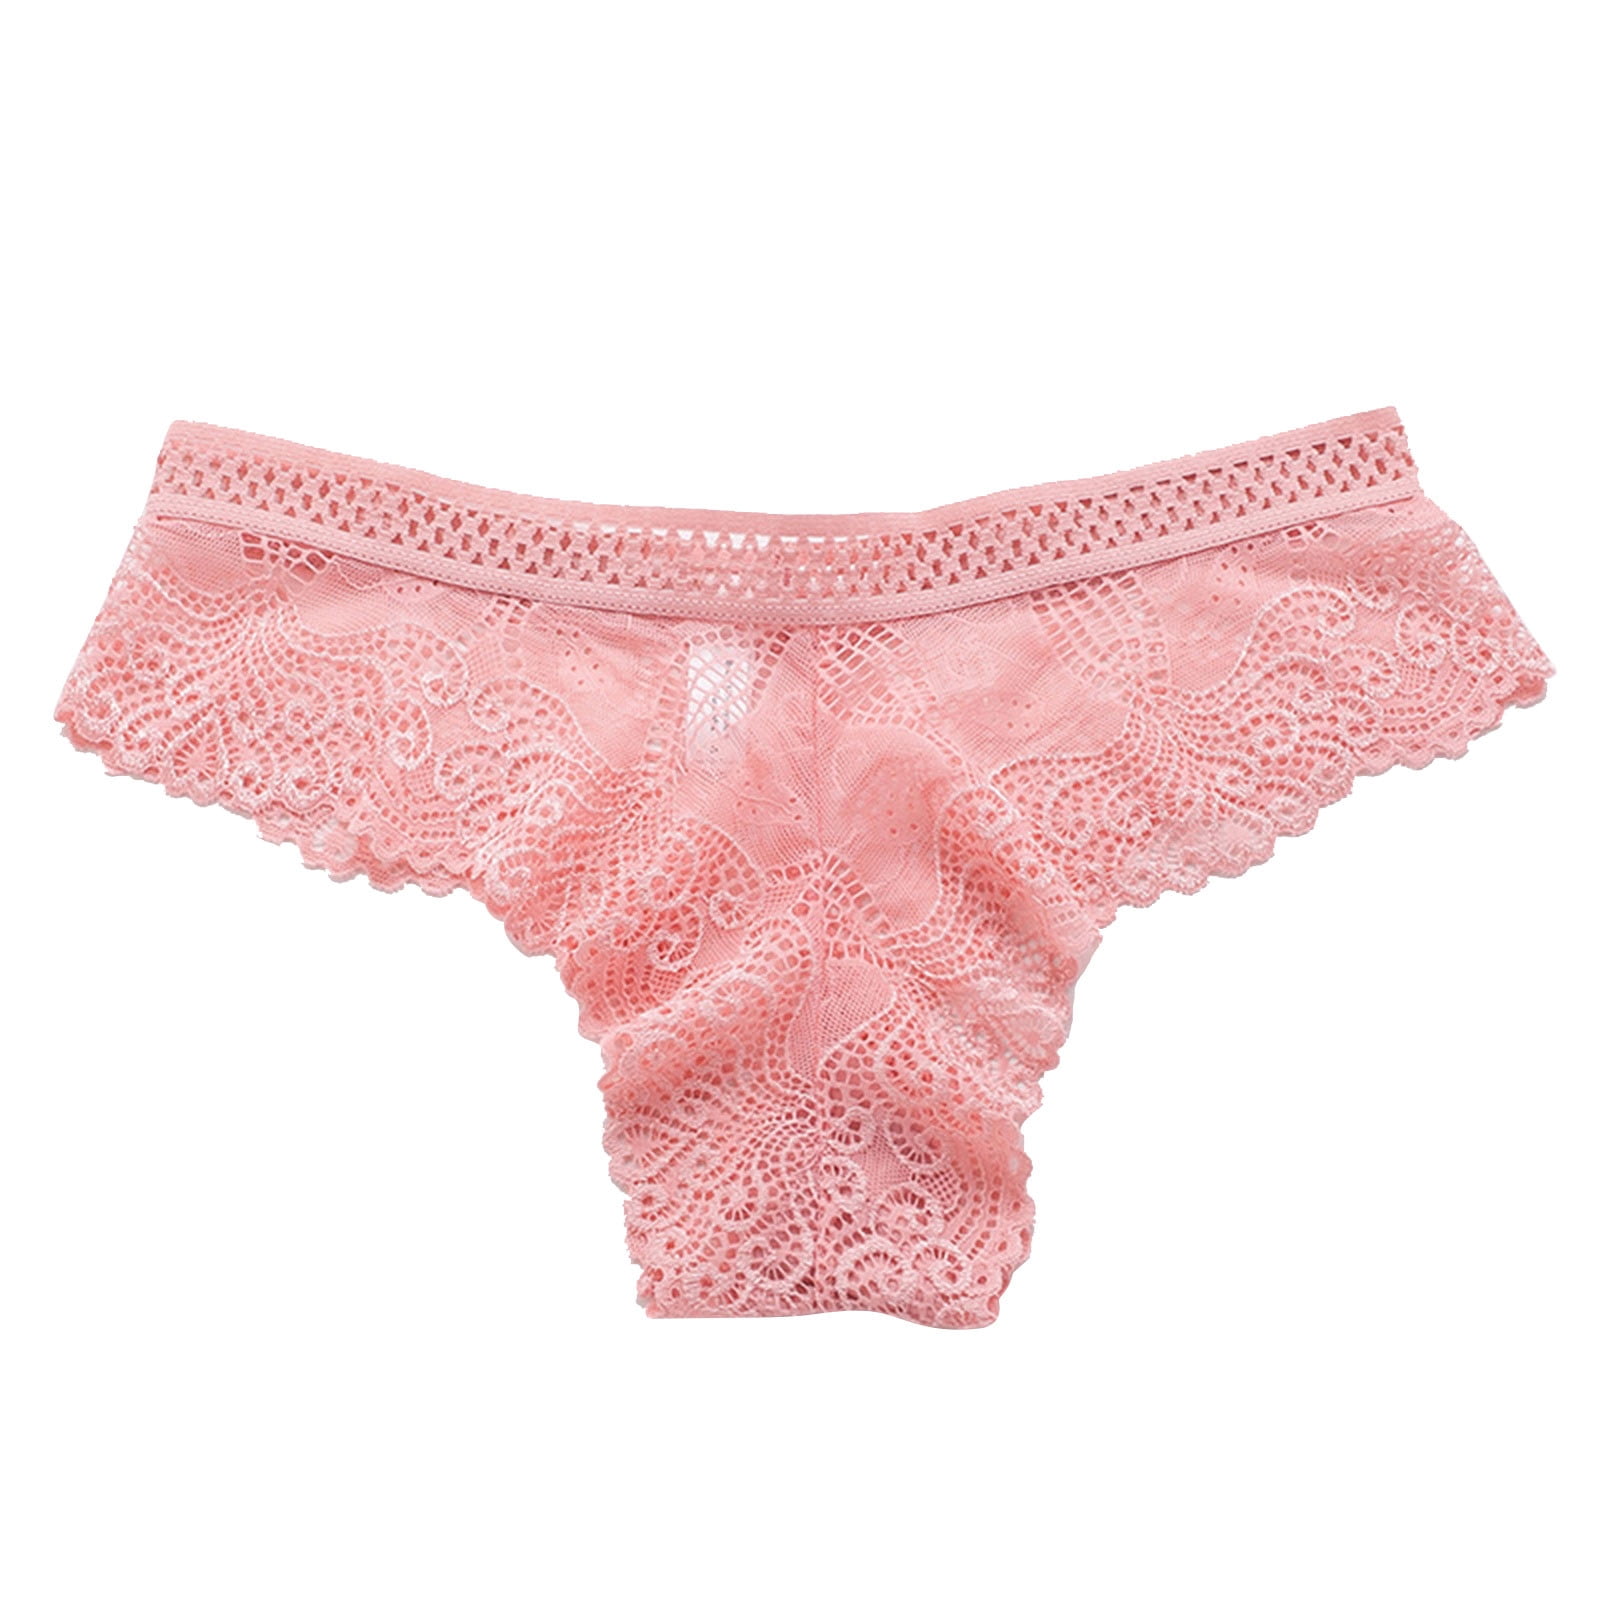 Hfyihgf Women's Lingerie Sexy Lingerie Lace Open Thong G-Pants